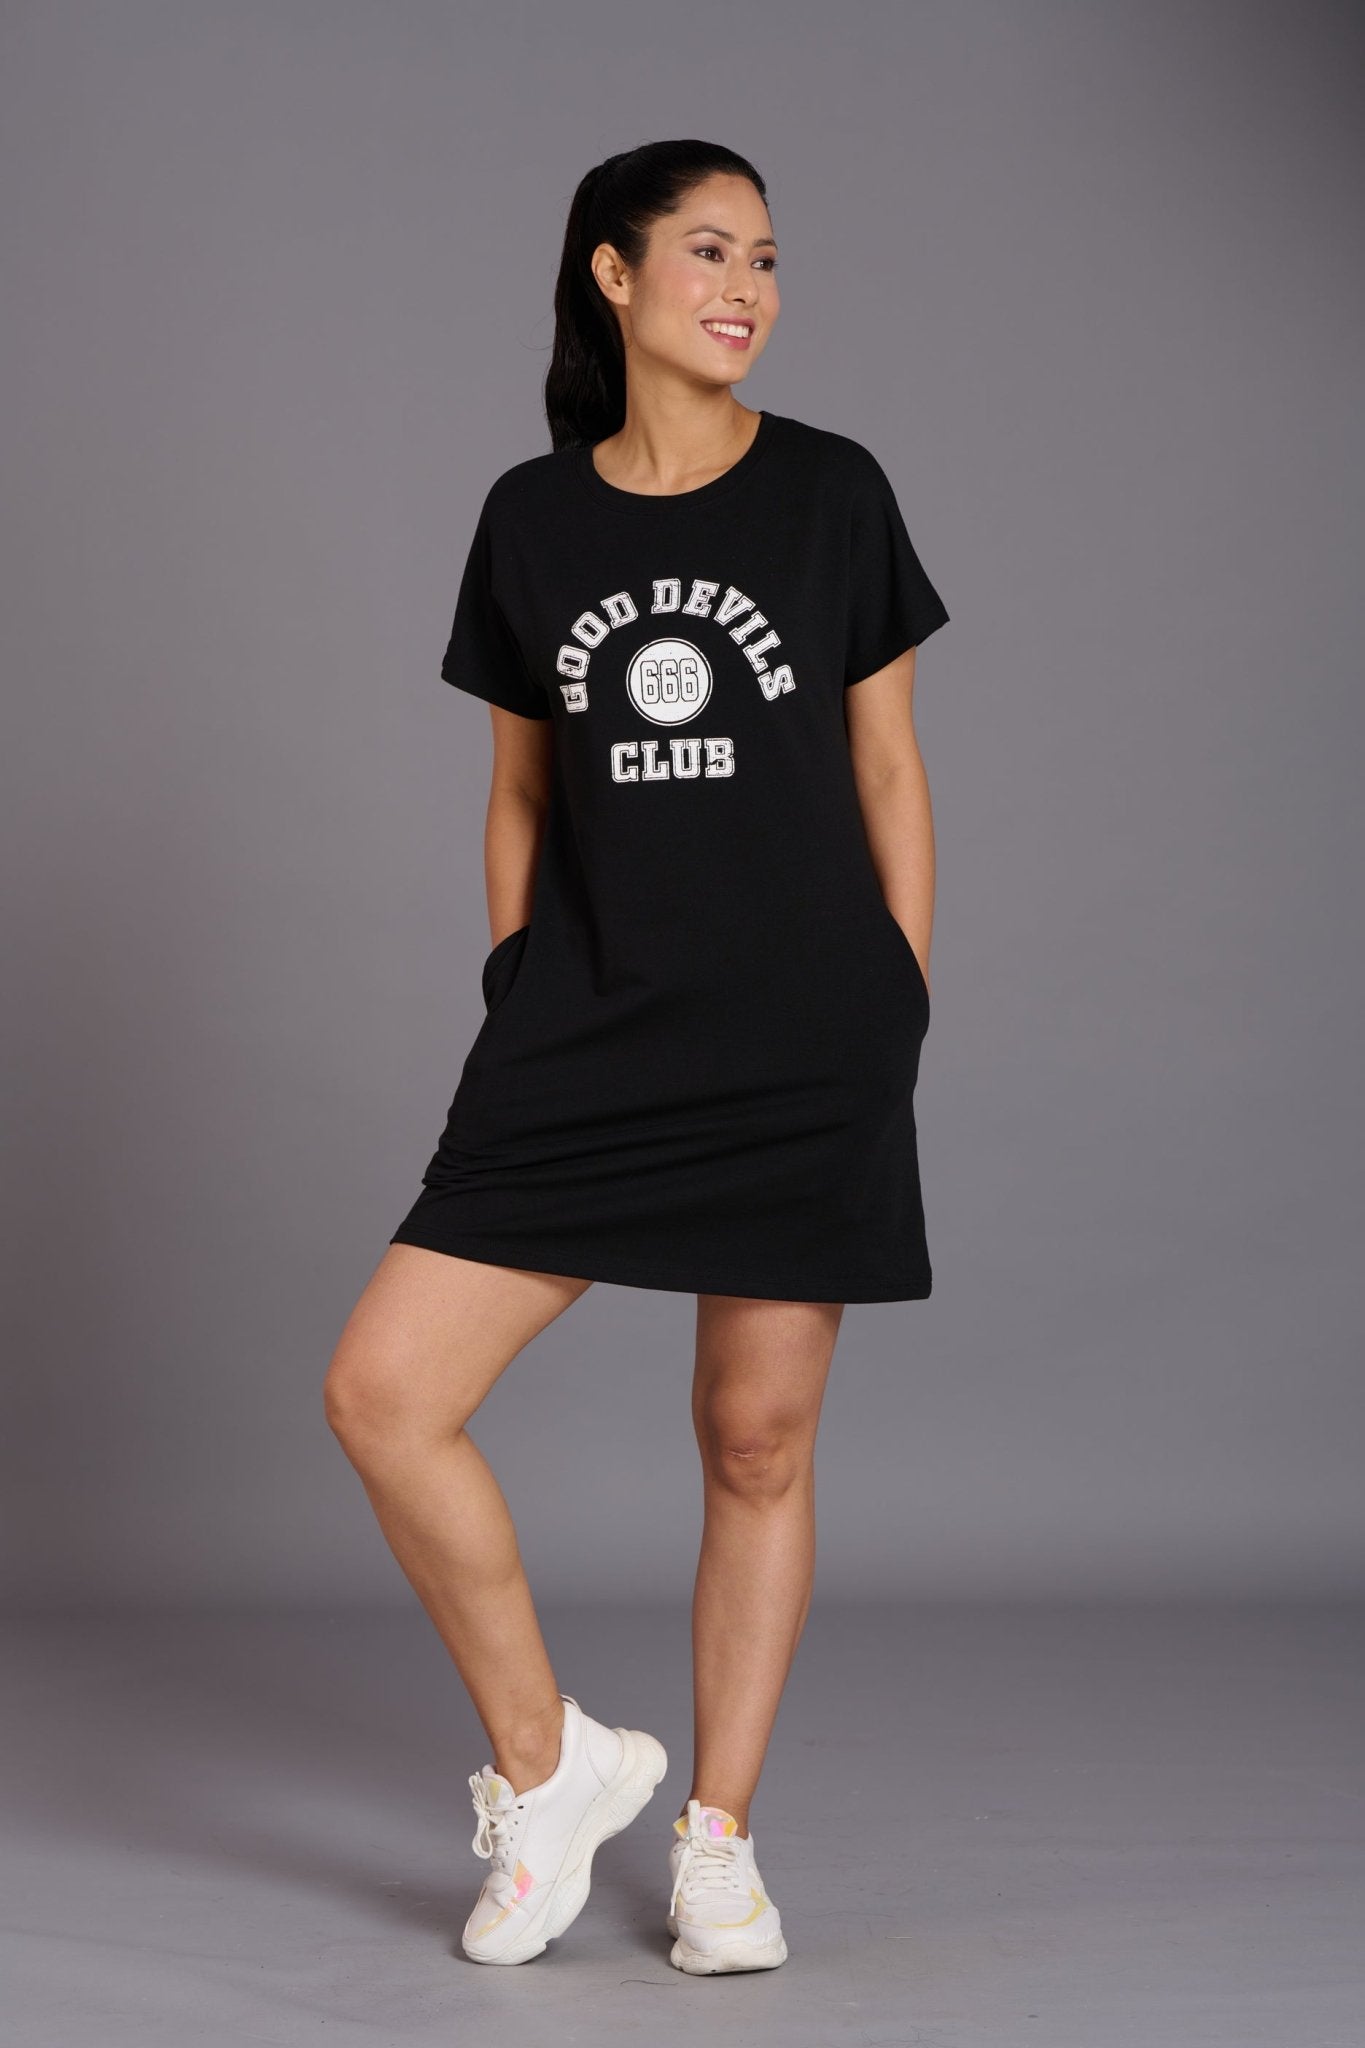 Good Devil Club Black Dress for Women - Go Devil